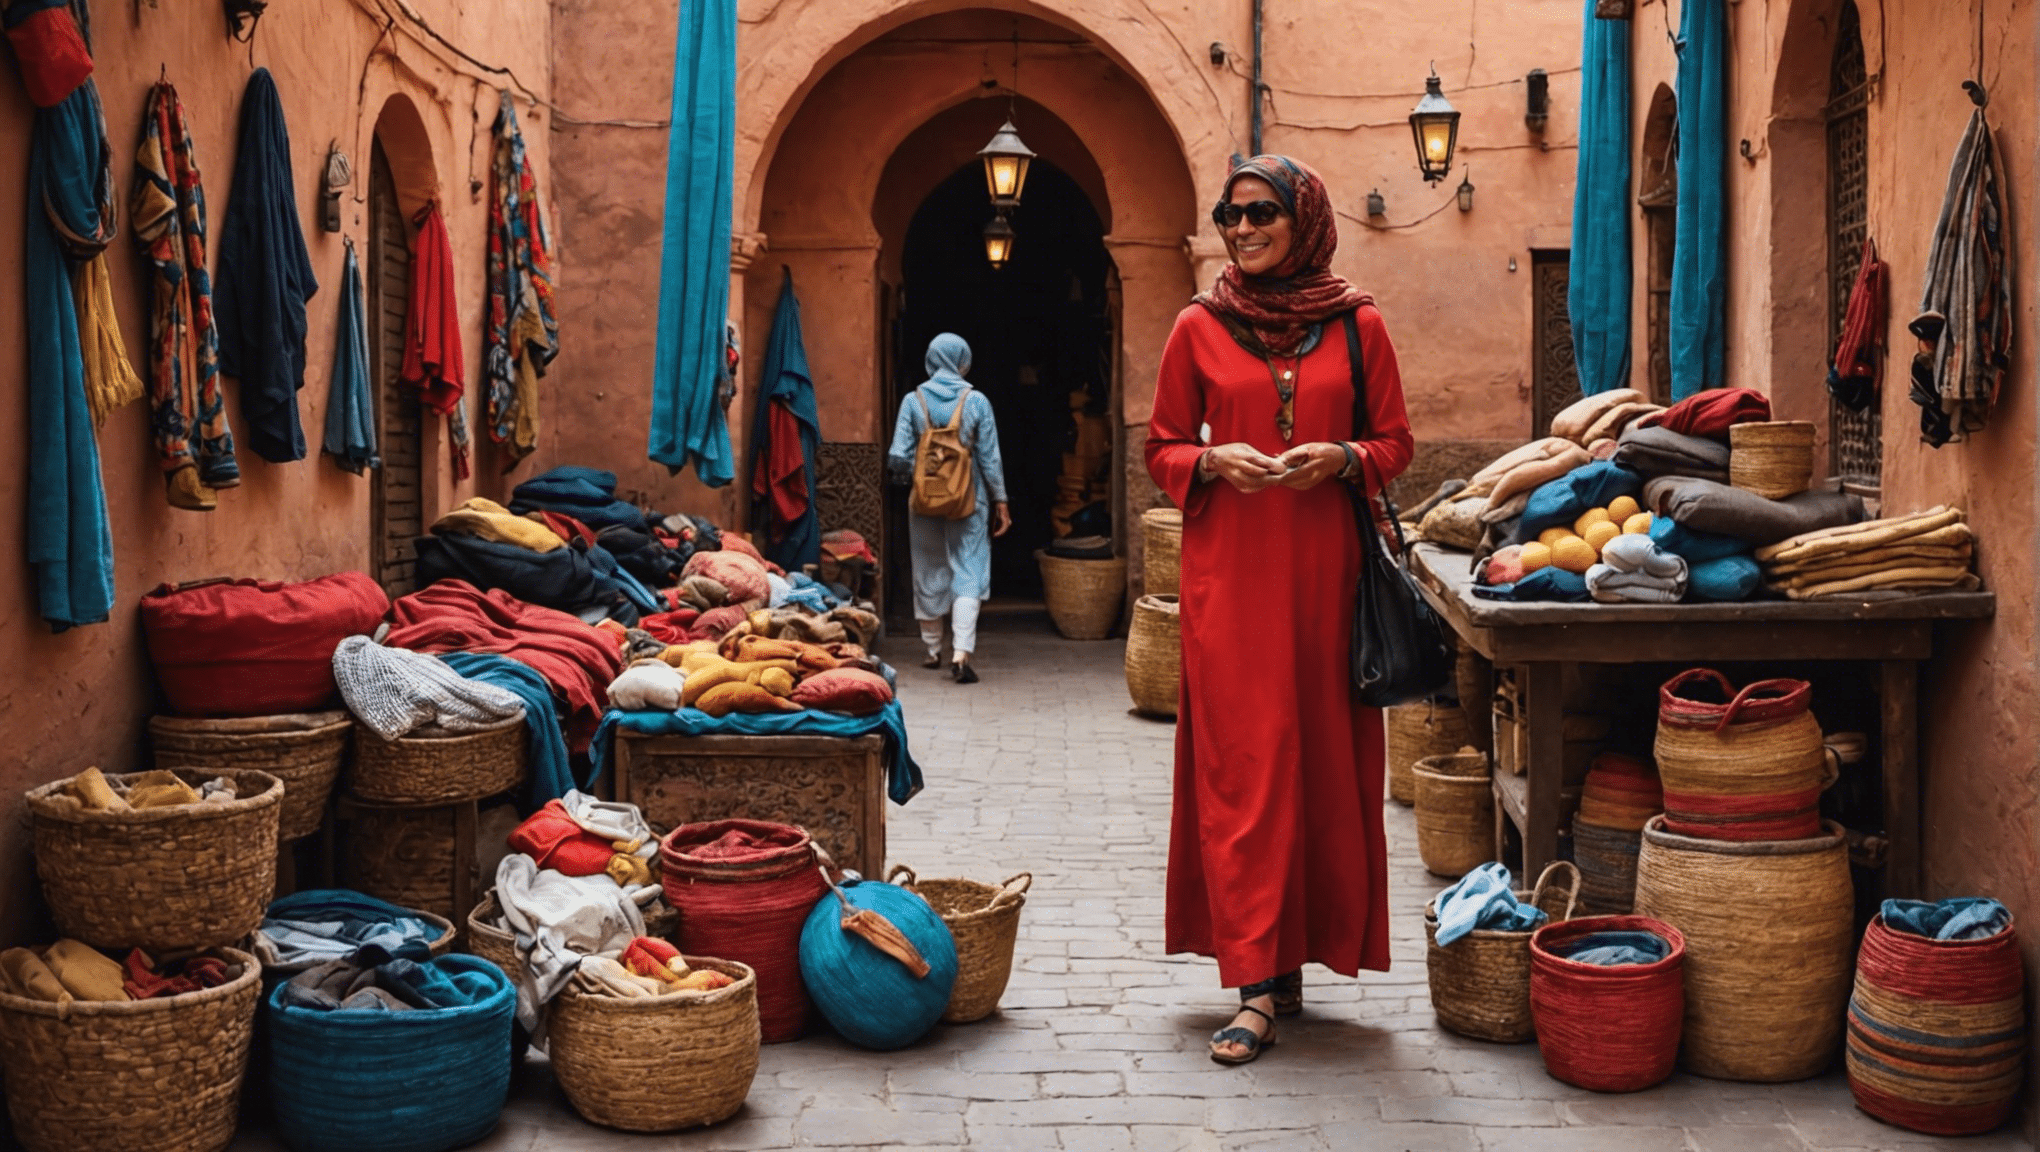 Descubra qué elementos esenciales debe empacar para su última aventura en Marrakech en abril y aproveche al máximo su viaje con nuestros útiles consejos y sugerencias.